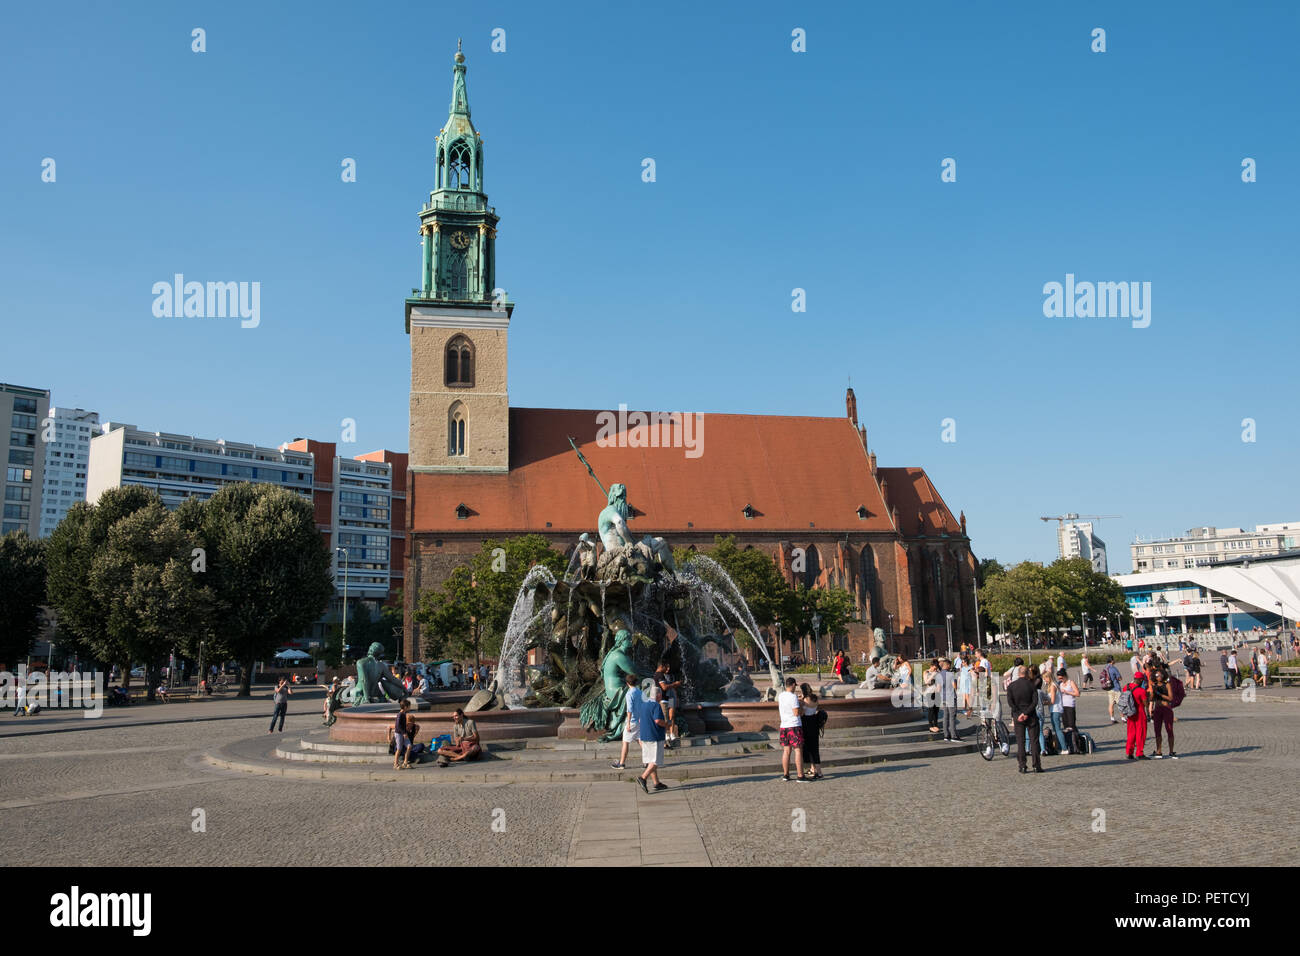 Berlino, Germania - agosto 2018: turistici persone alla Fontana di Nettuno ( Neptunbrunnen) ad Alexanderplatz di Berlino, Germania Foto Stock